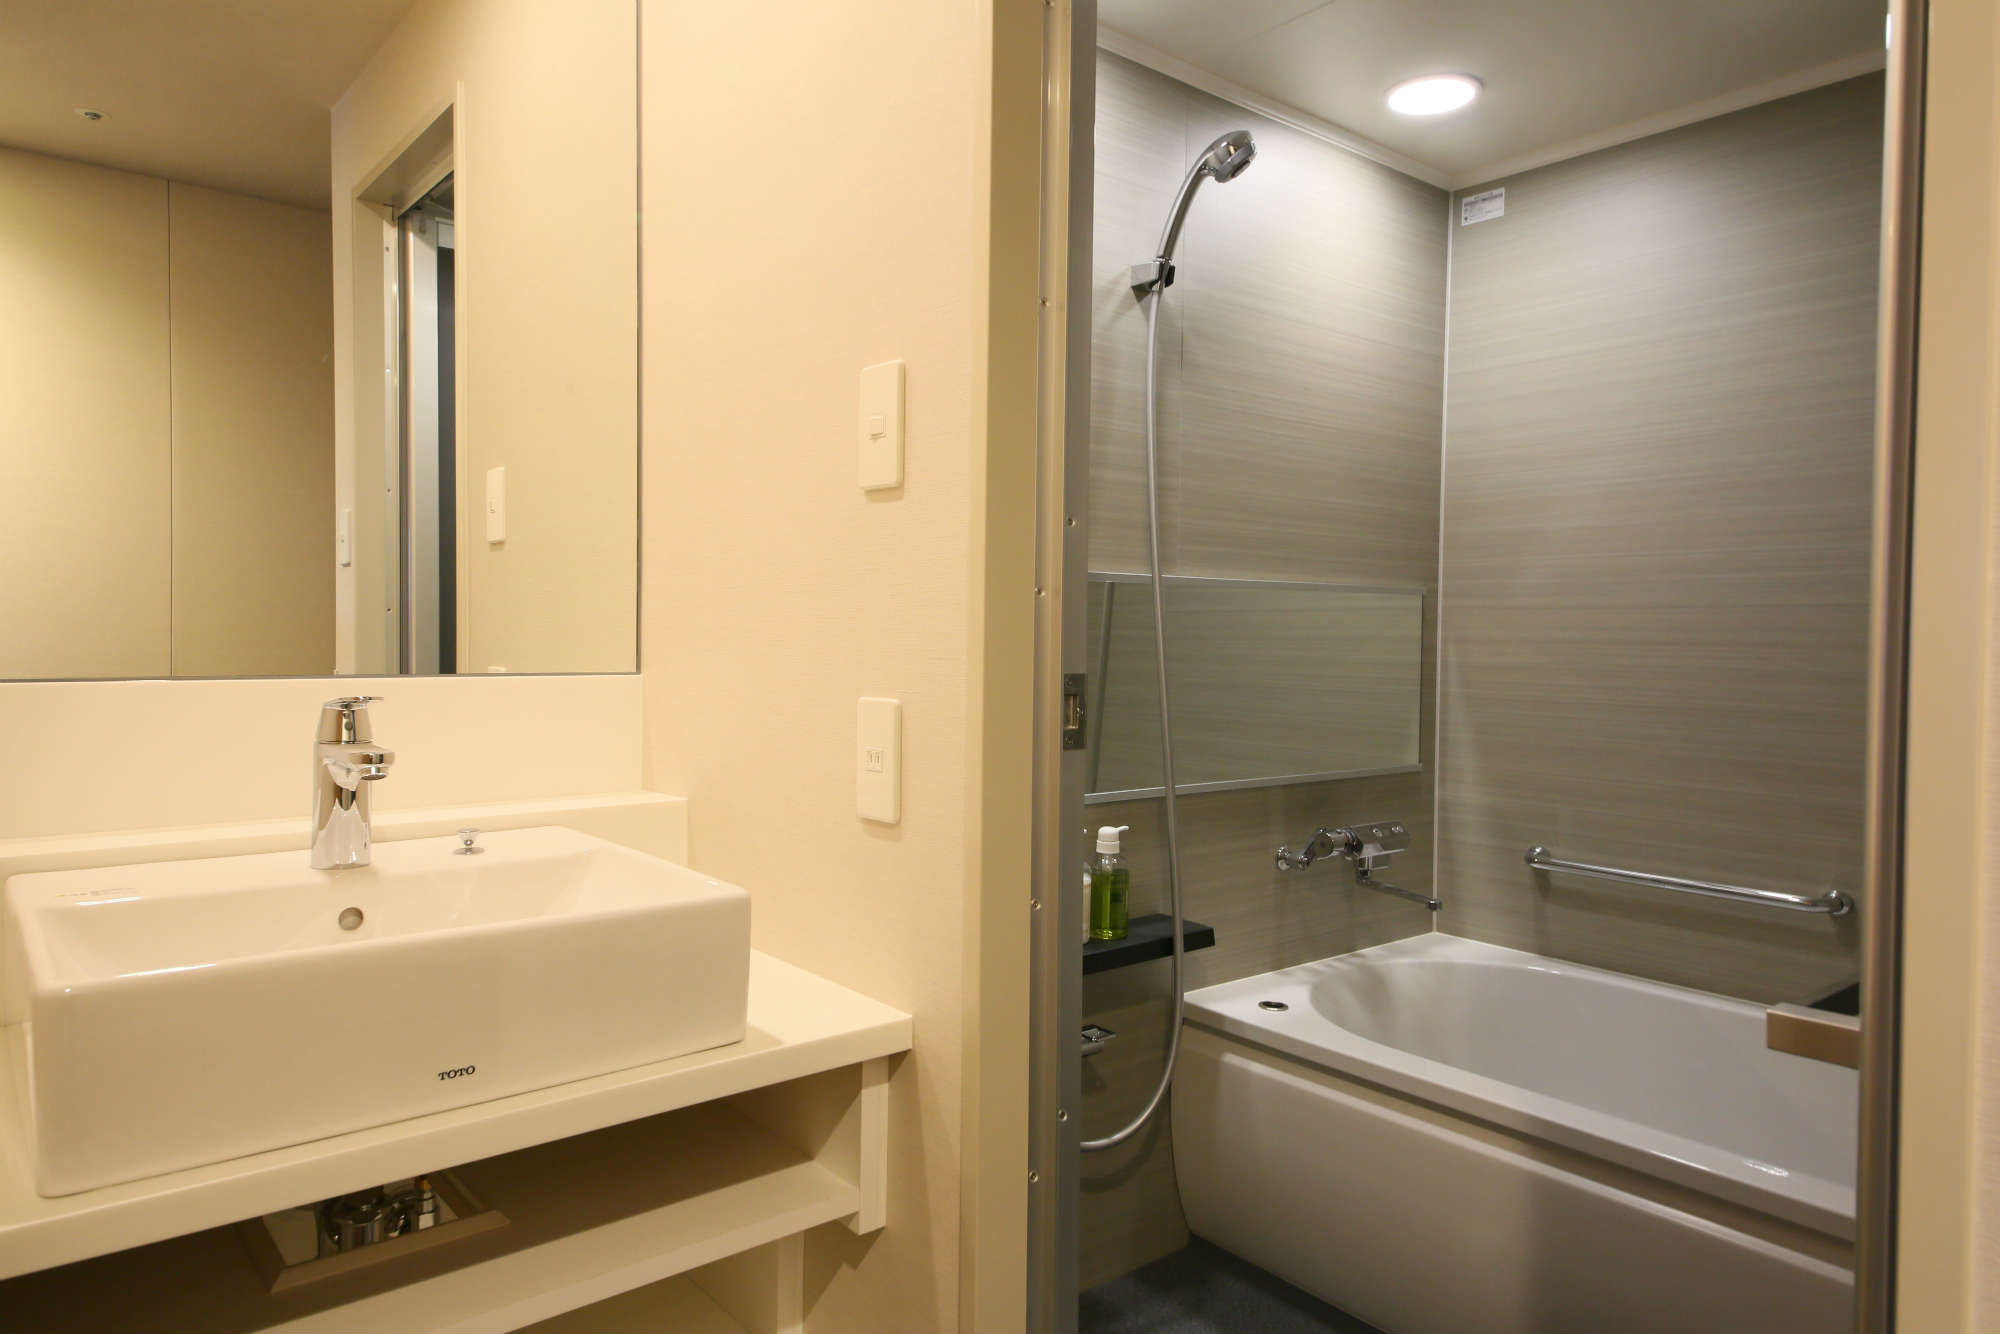 【東京近郊一天行程】江之島、鎌倉 格拉斯麗新宿酒店 Hotel Gracery Shinjuku - 廁所與浴室